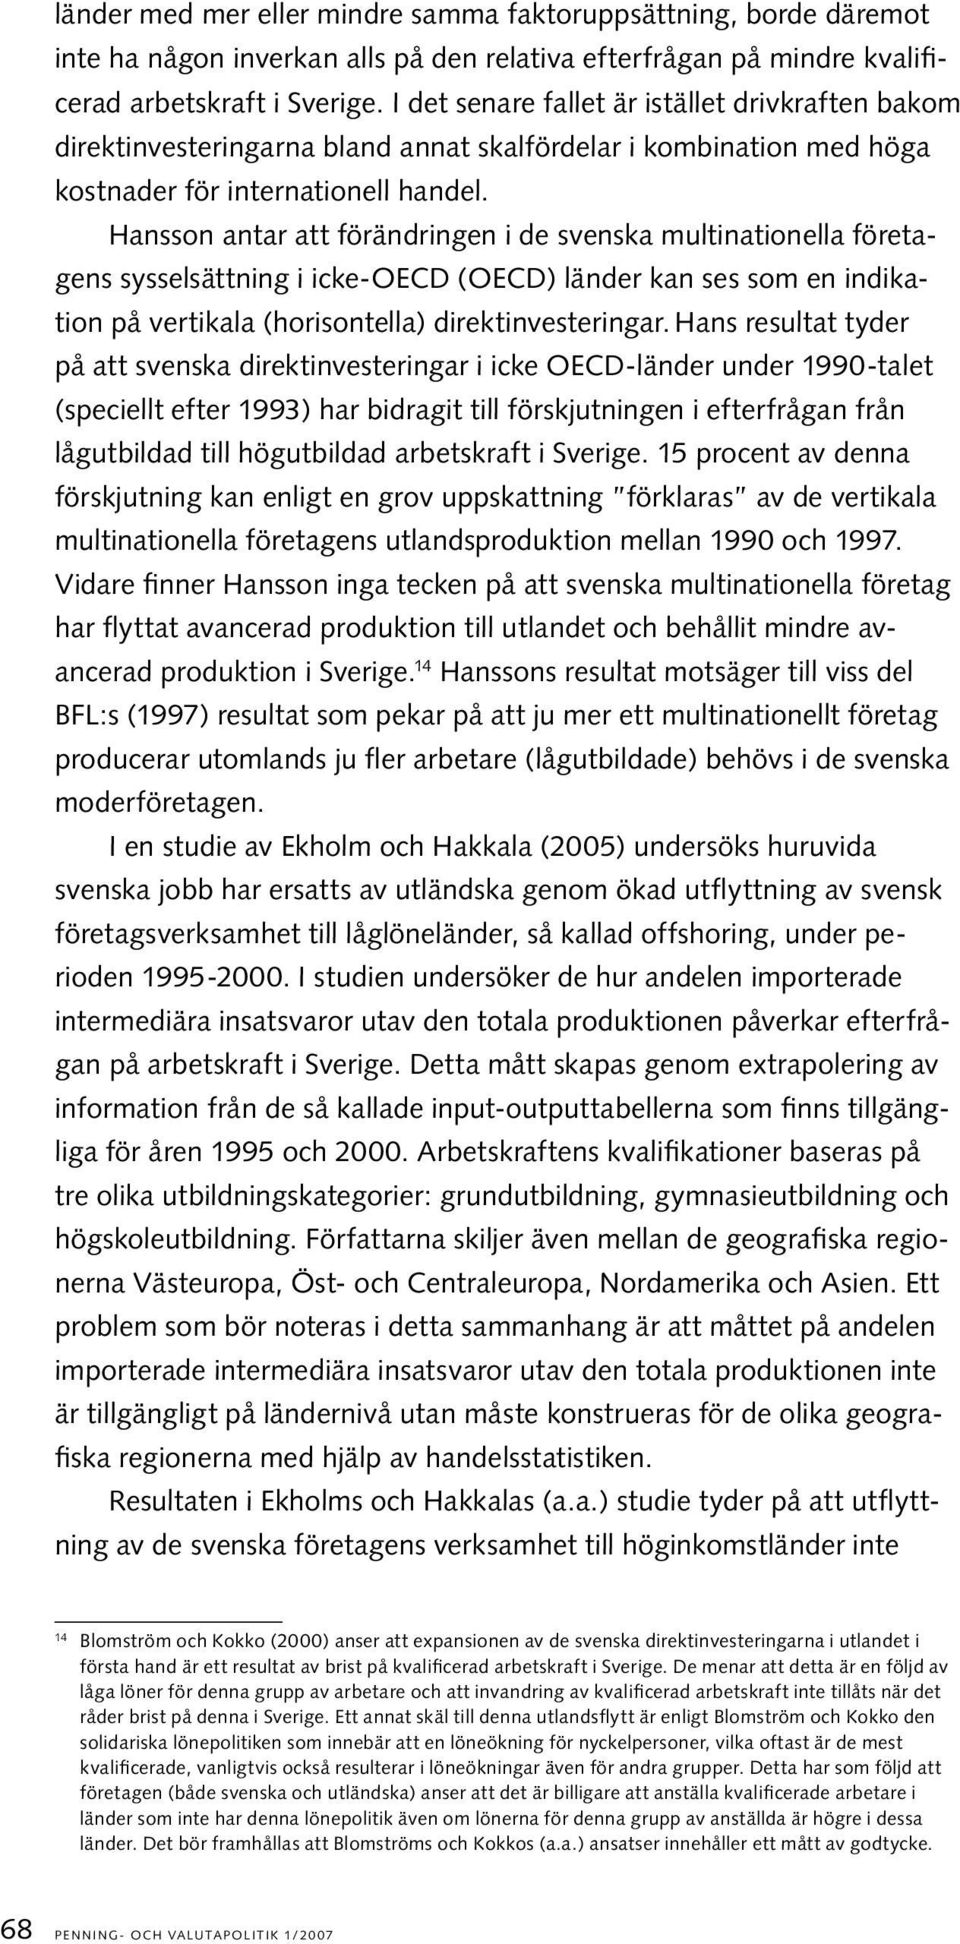 Hansson antar att förändringen i de svenska multinationella företagens sysselsättning i icke-oecd (OECD) länder kan ses som en indikation på vertikala (horisontella) direktinvesteringar.